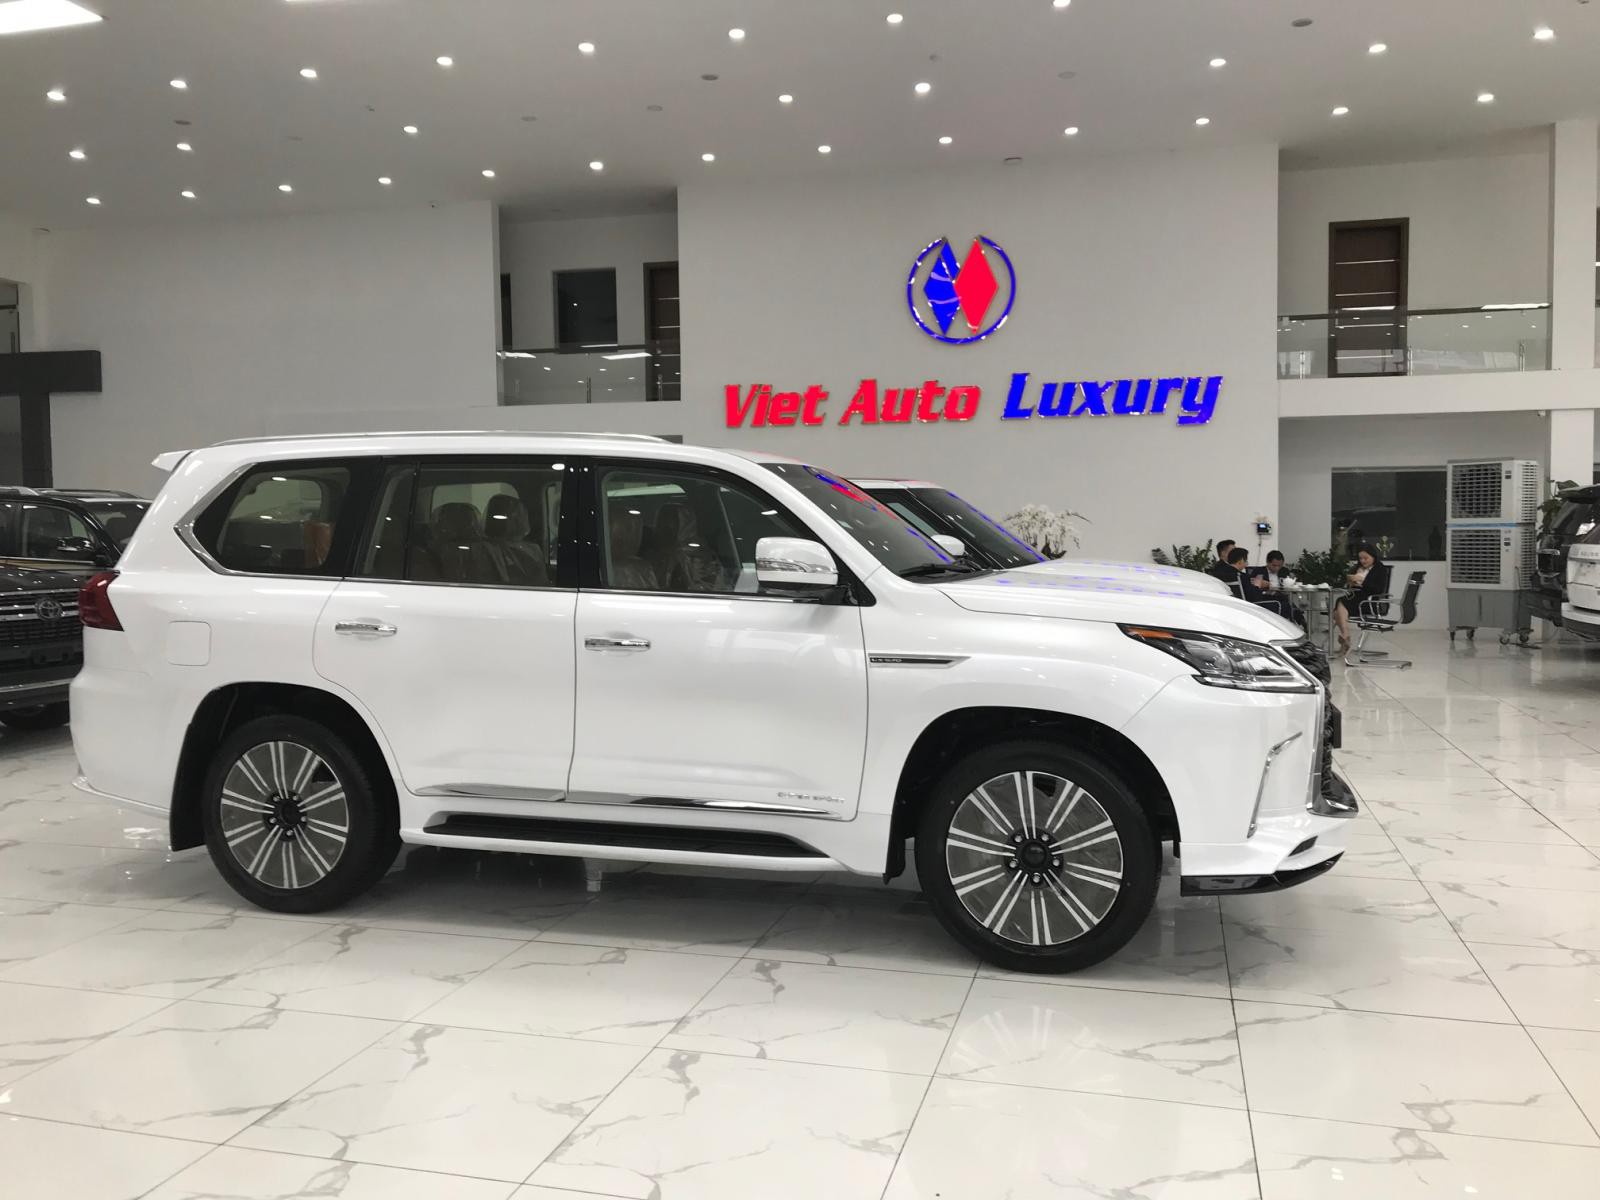 Viet Auto Luxury bán xe Lexus LX570 Super Sport S sản xuất 2021, màu trắng nội thất nâu da bò, xe nhập khẩu Trung Đông